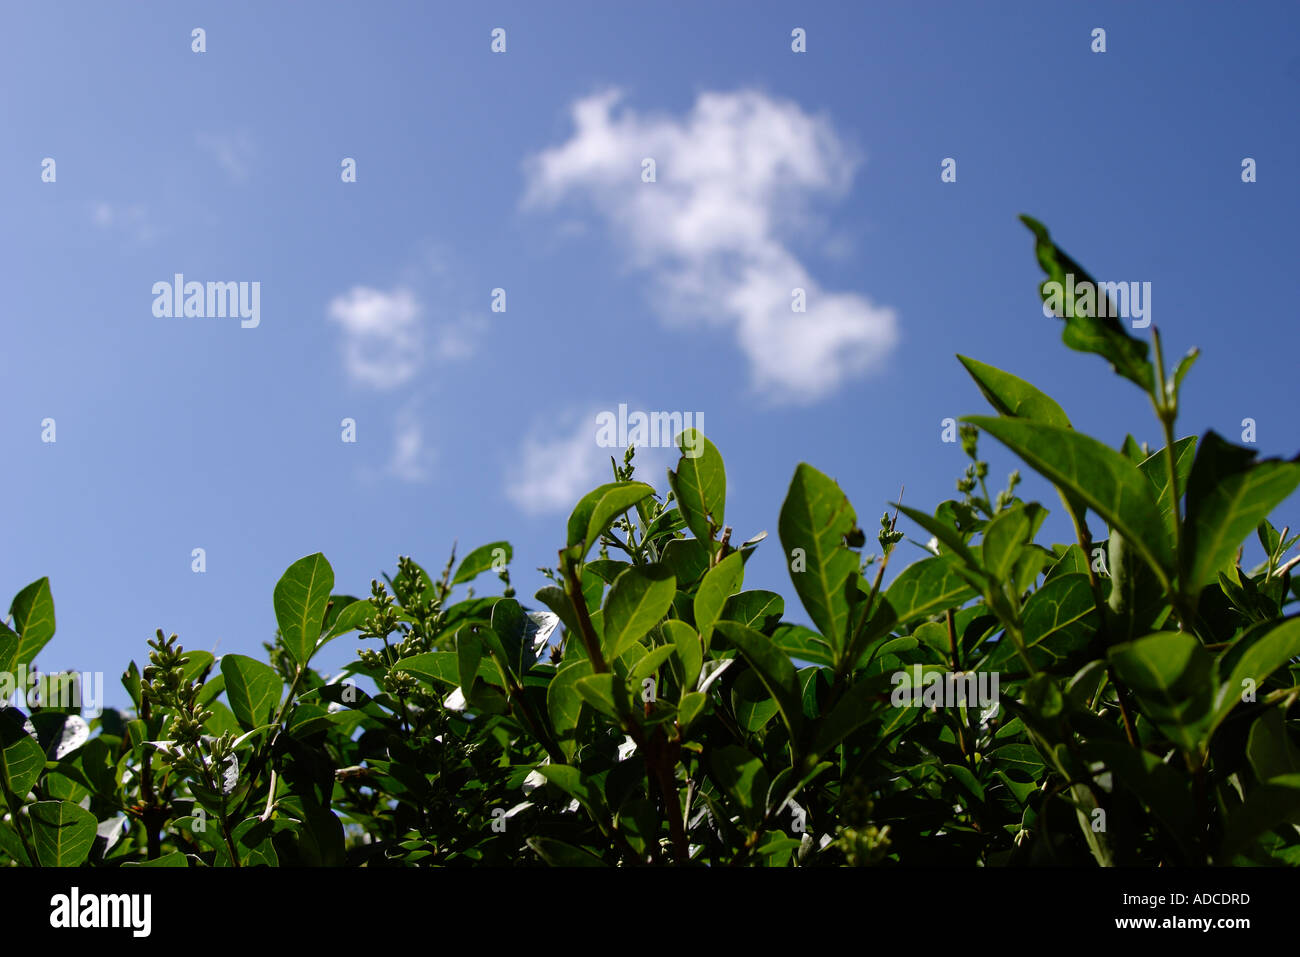 Immagine ritratto di verde privet hedge con cielo blu con piccola nube bianca shot in presenza di intensa luce solare shot il 21 giugno 2006 Foto Stock